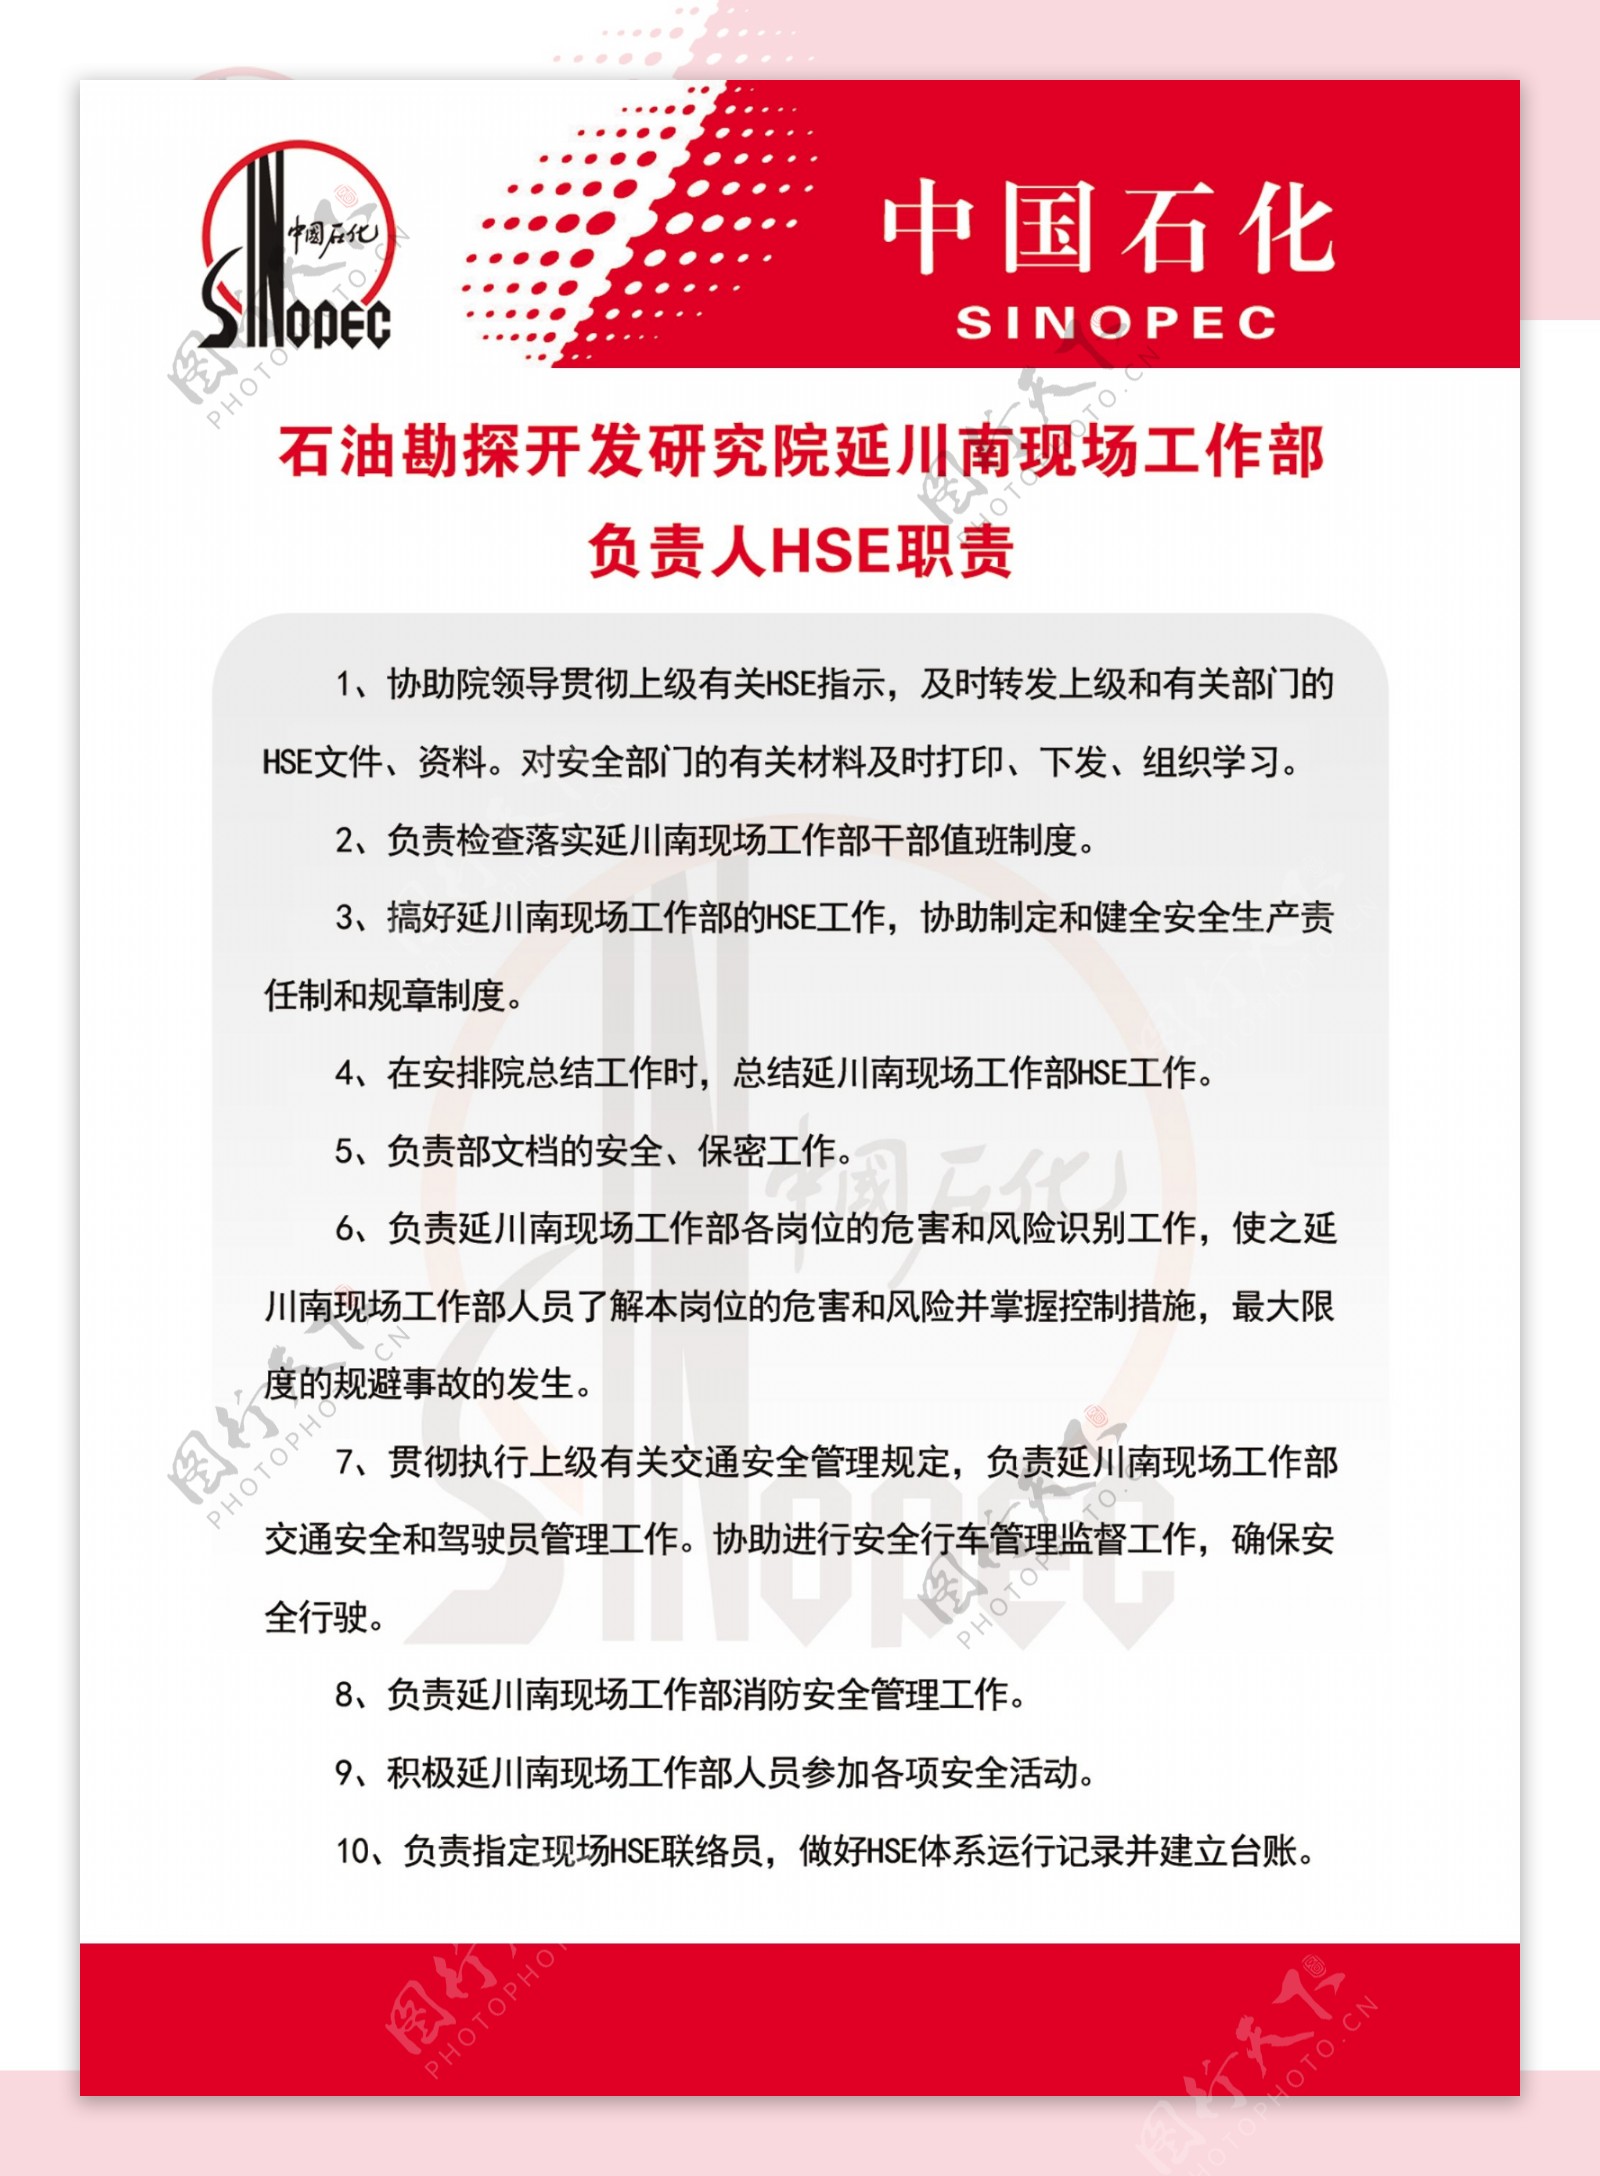 中国石化安全宣誓制度牌